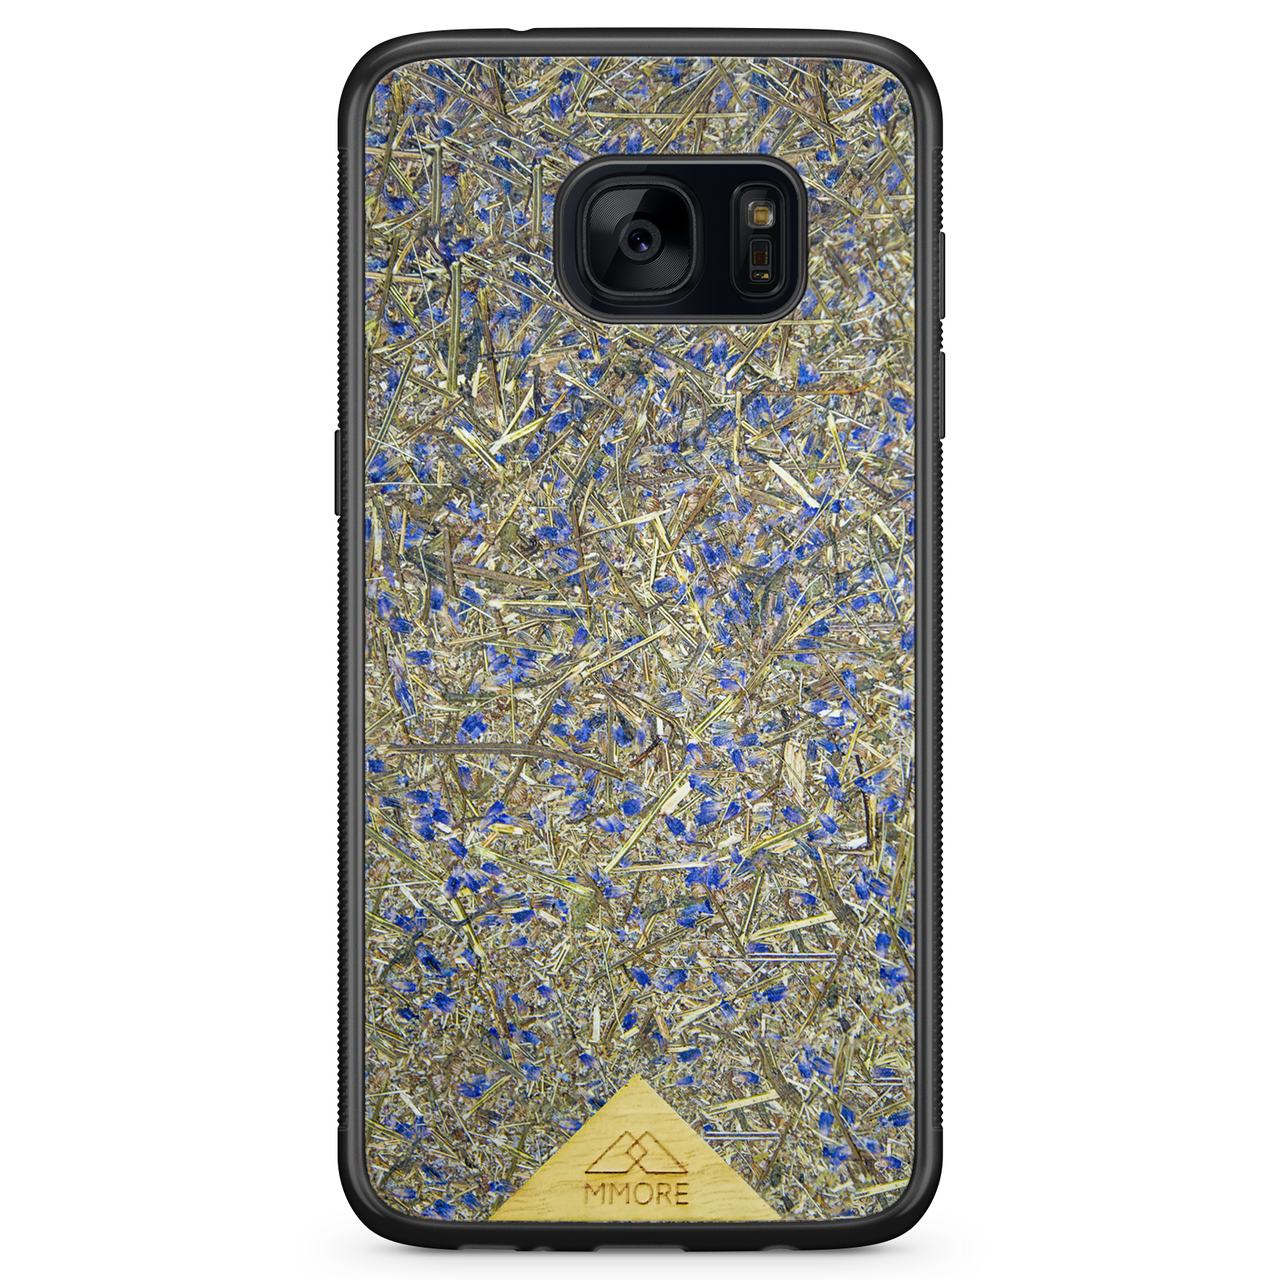 Чехол для телефона Samsung Galaxy S7 с черной рамкой и бледно-лиловым цветом